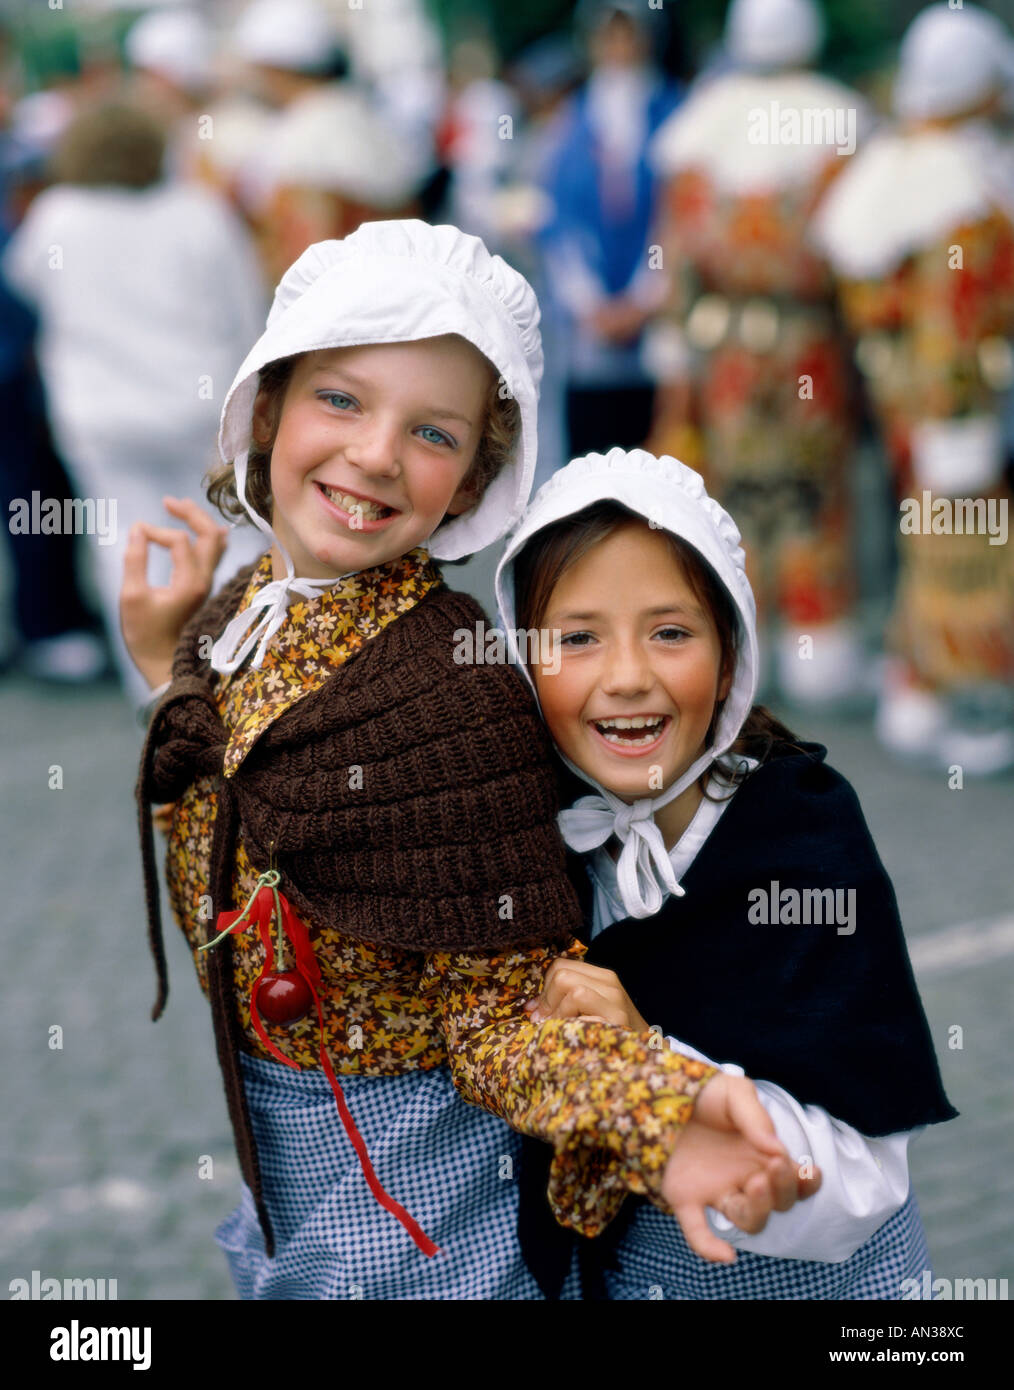 girls-dressed-in-national-costume-ghent-western-flanders-belgium-AN38XC.jpg